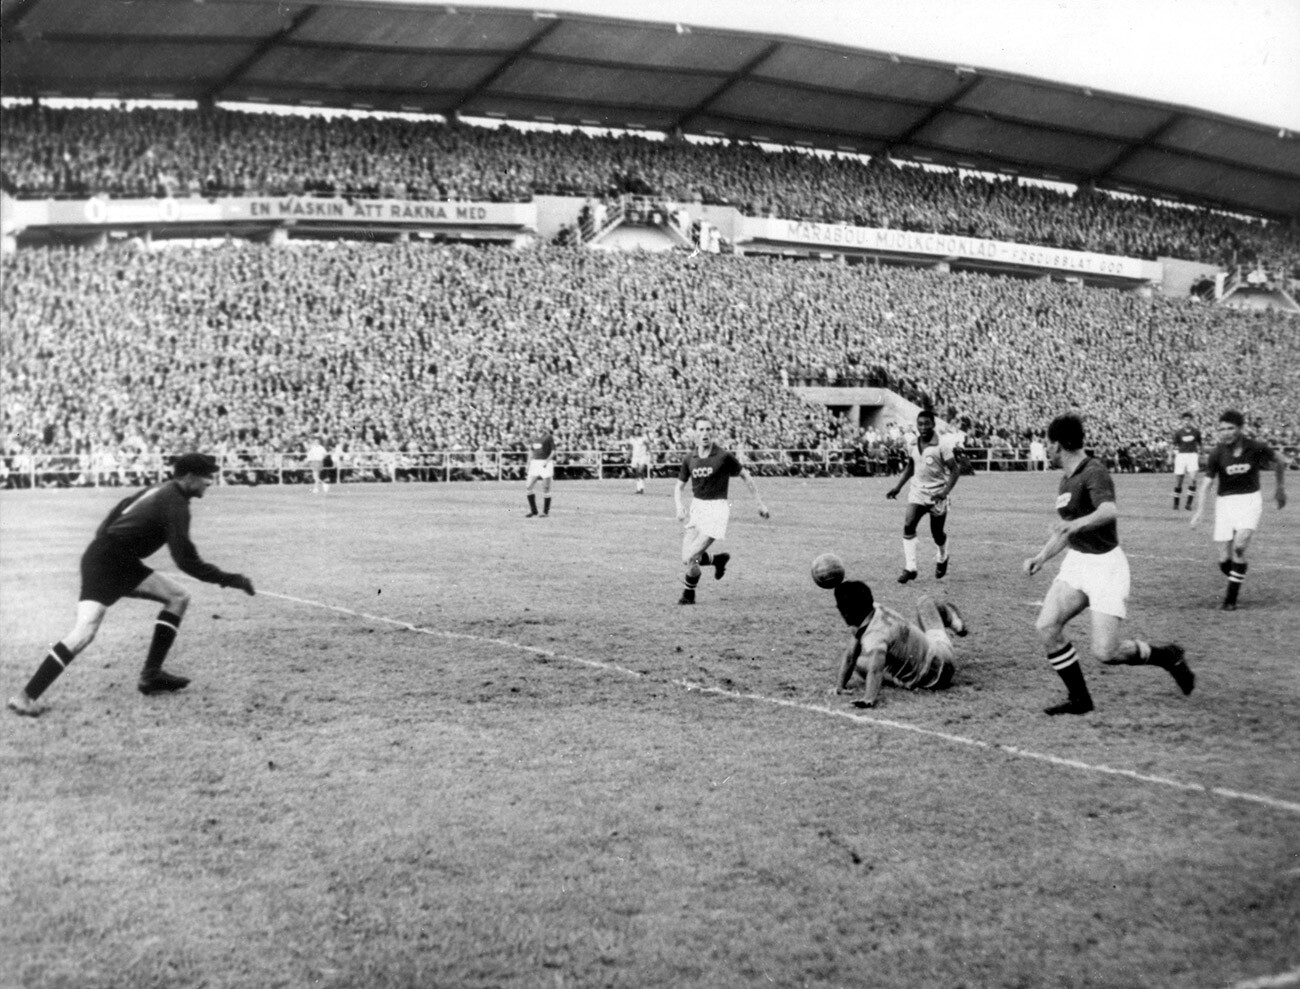 Das Gruppenspiel der FIFA Fußball-Weltmeisterschaft 1958 zwischen Brasilien und der Sowjetunion.